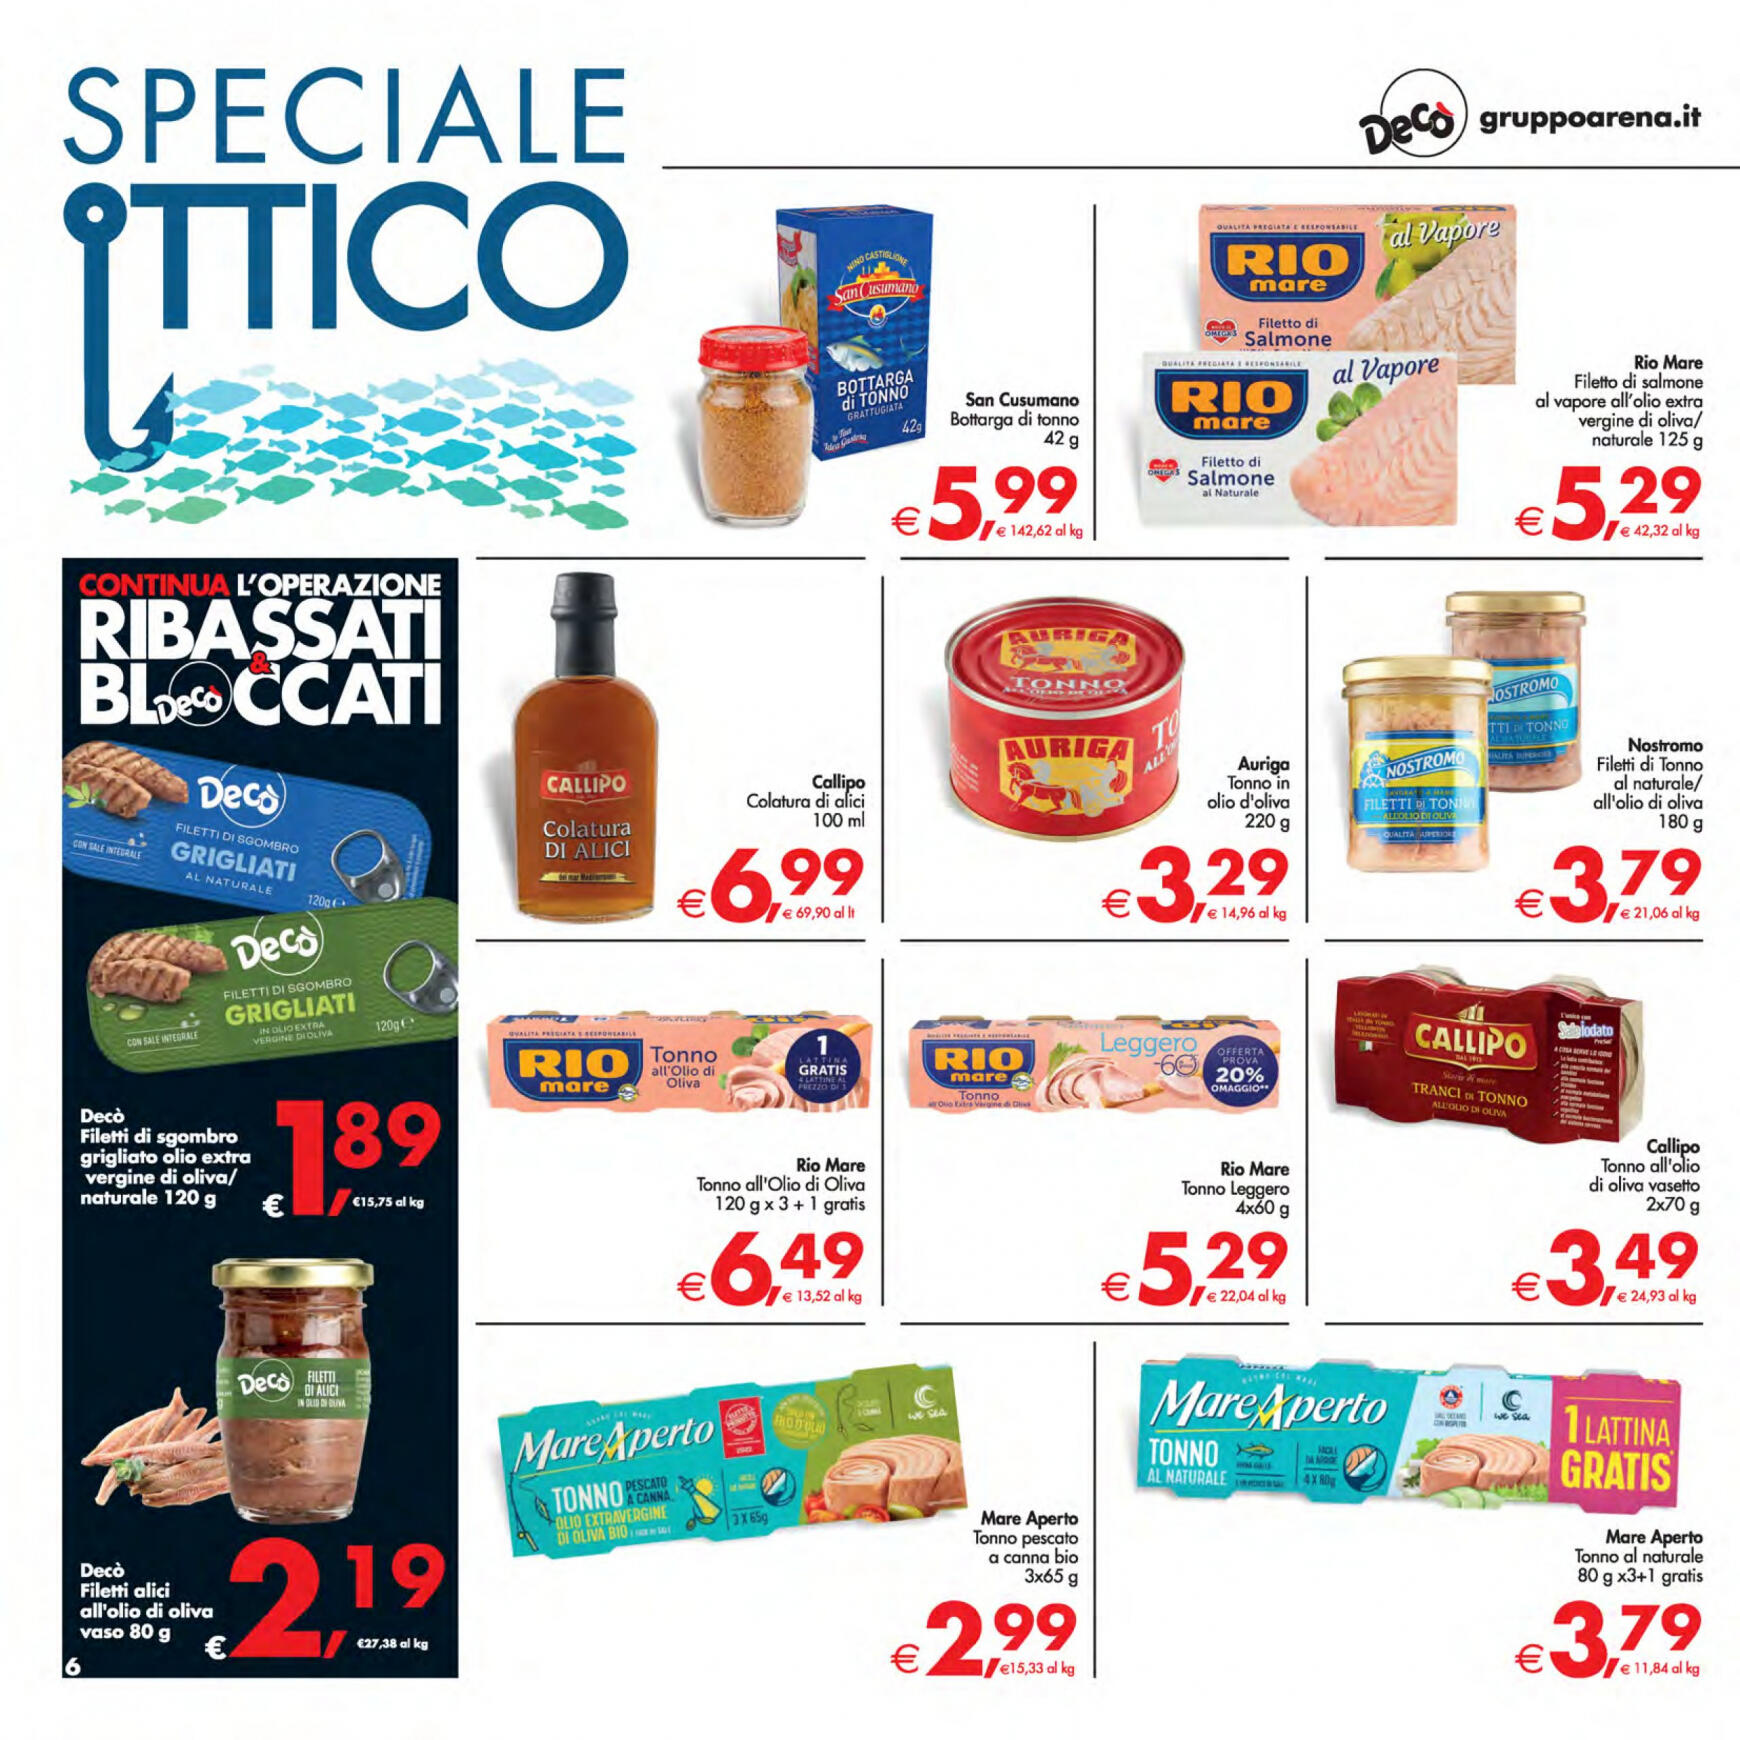 deco - Nuovo volantino Decò - Supermercati/Maxistore/Local 23.04. - 02.05. - page: 6